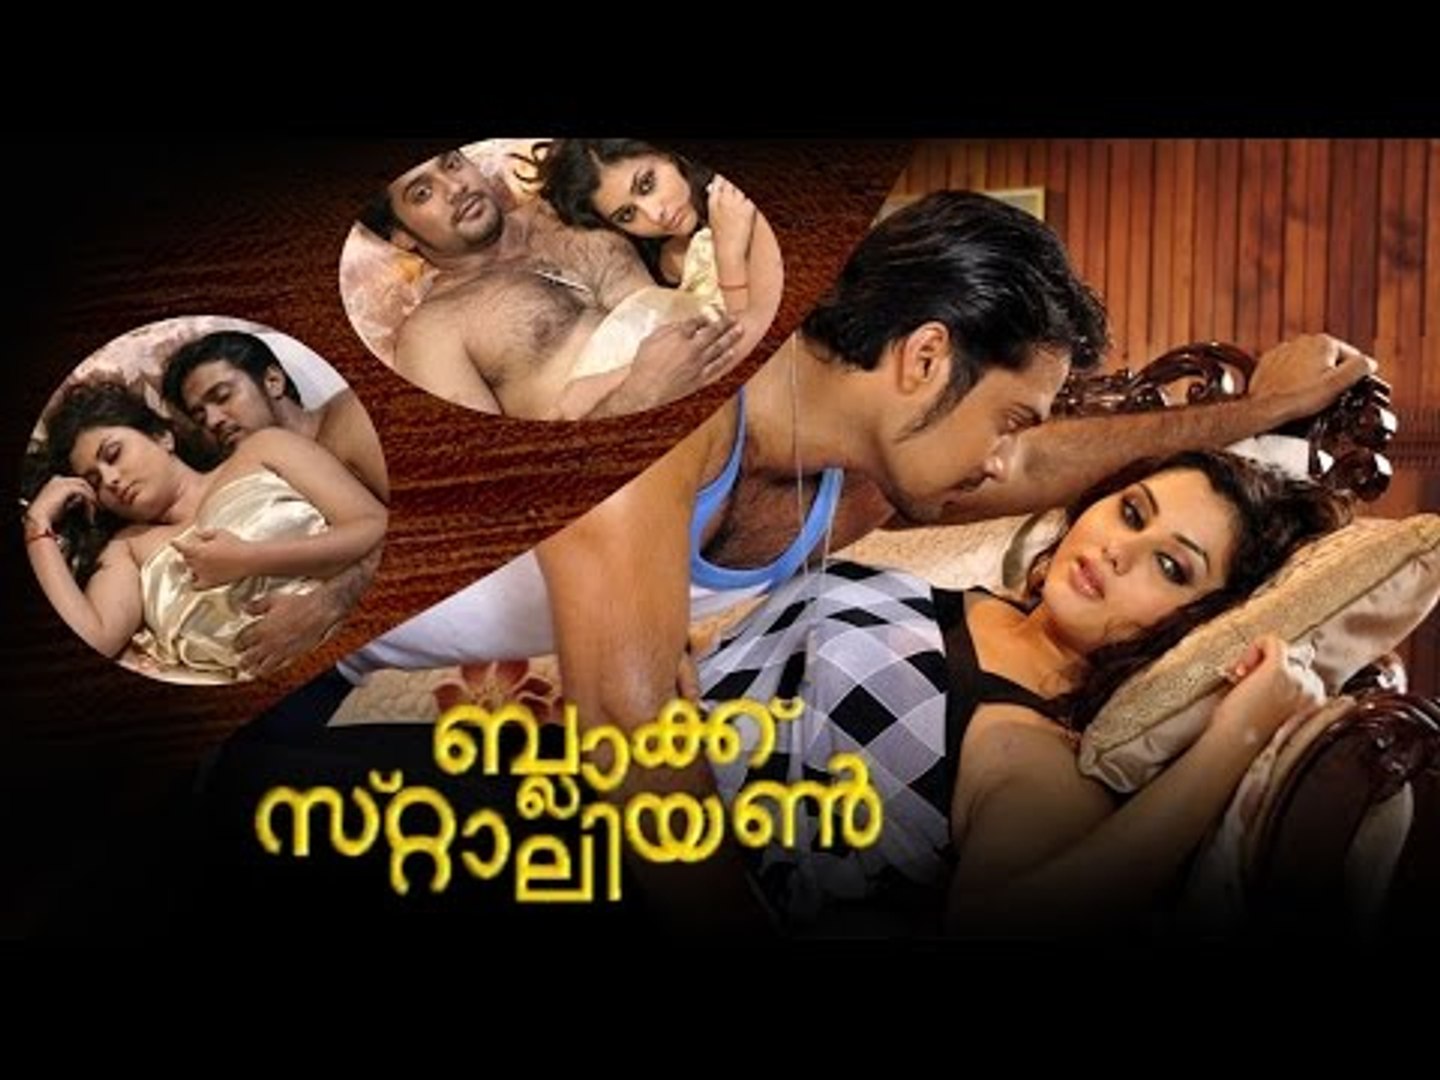 Malayalam film hot